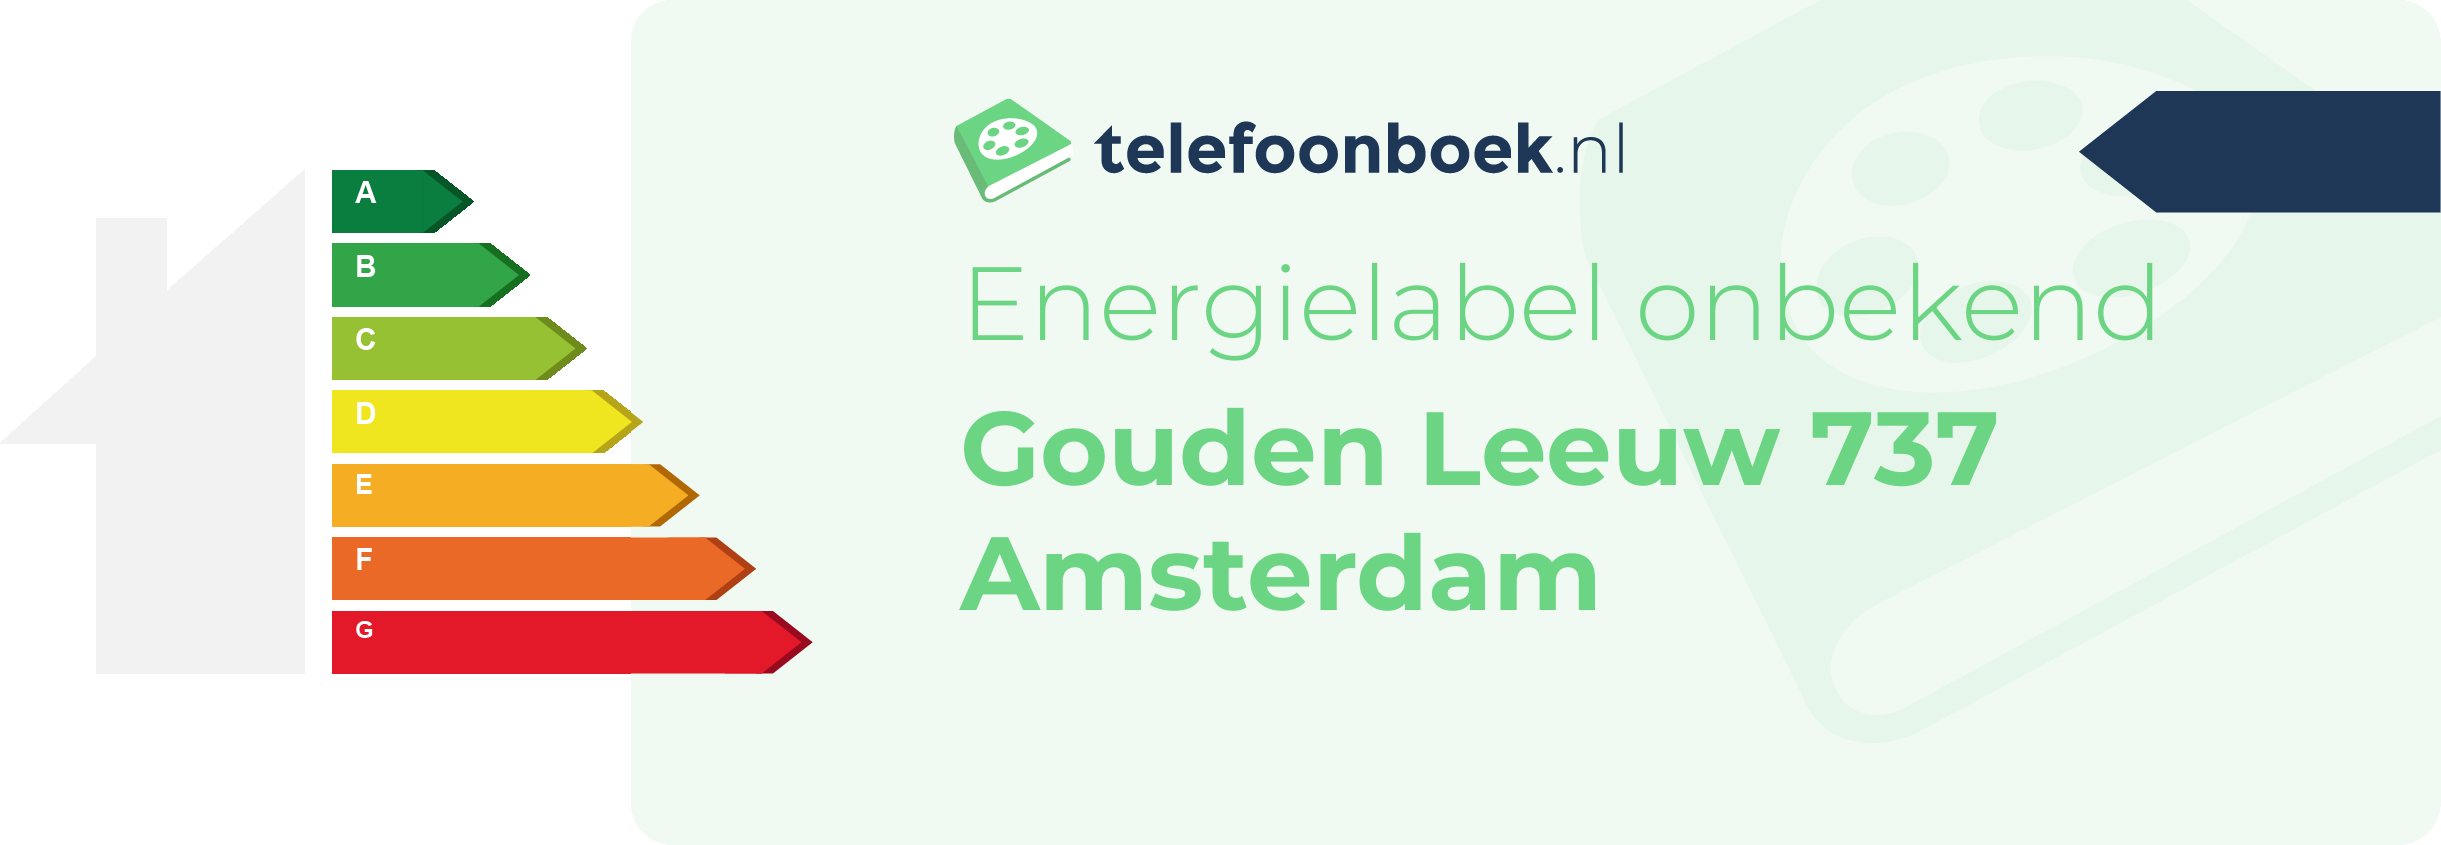 Energielabel Gouden Leeuw 737 Amsterdam